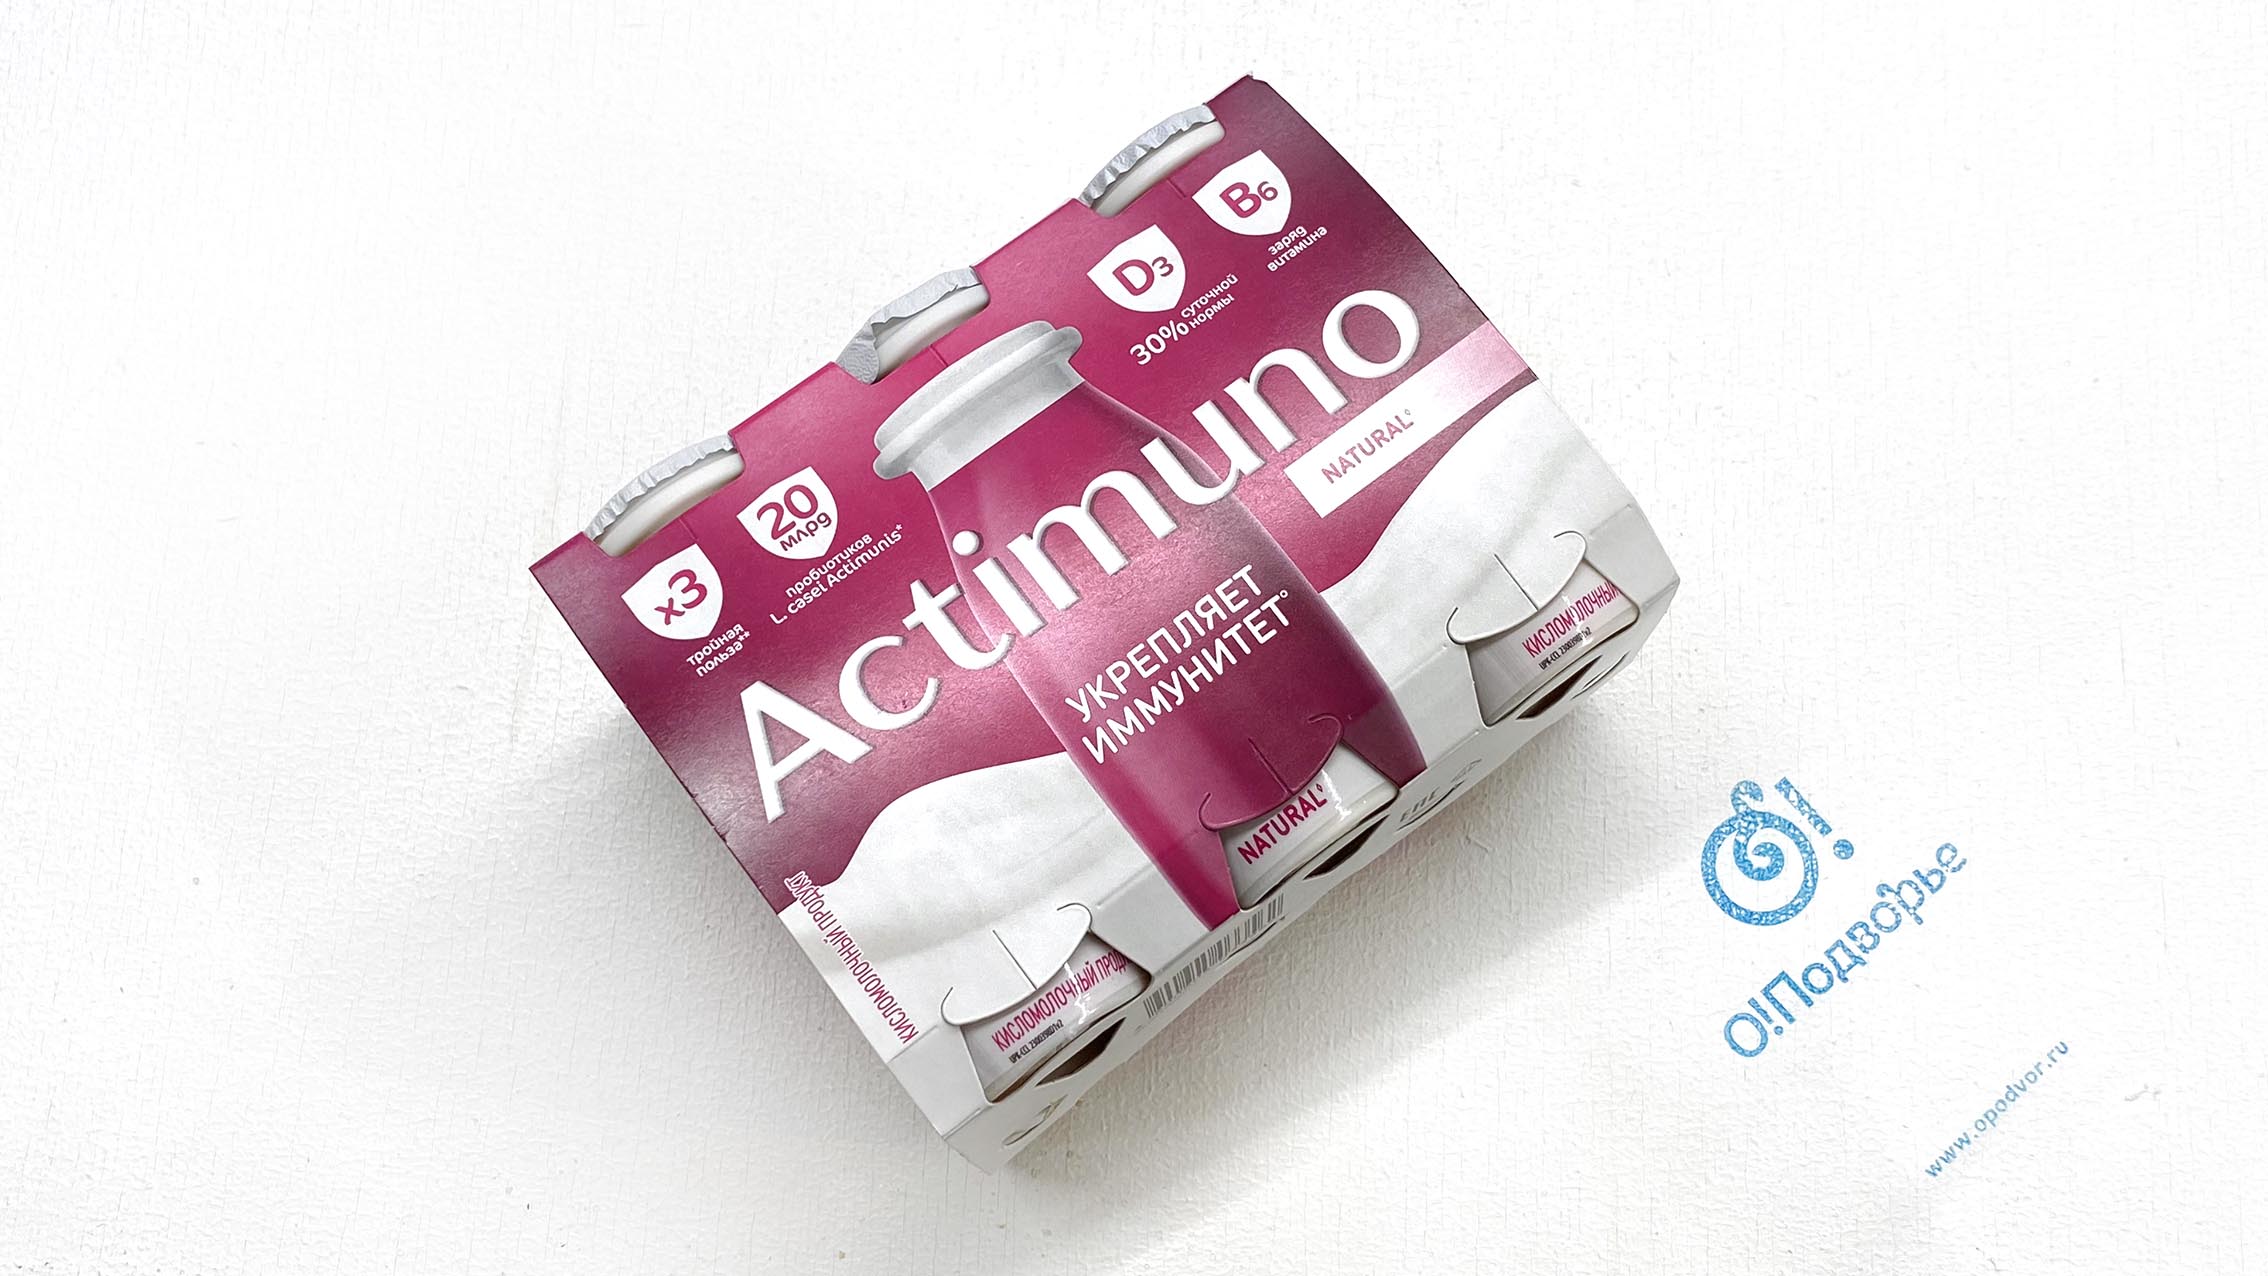 Actimuno, кисломолочный продукт, обогащенный лактобактериями L, Casel и витаминами В6 и D3, сладкий, 1,6%, 570 грамм- 6 шт. х 95 гр., (Зл)